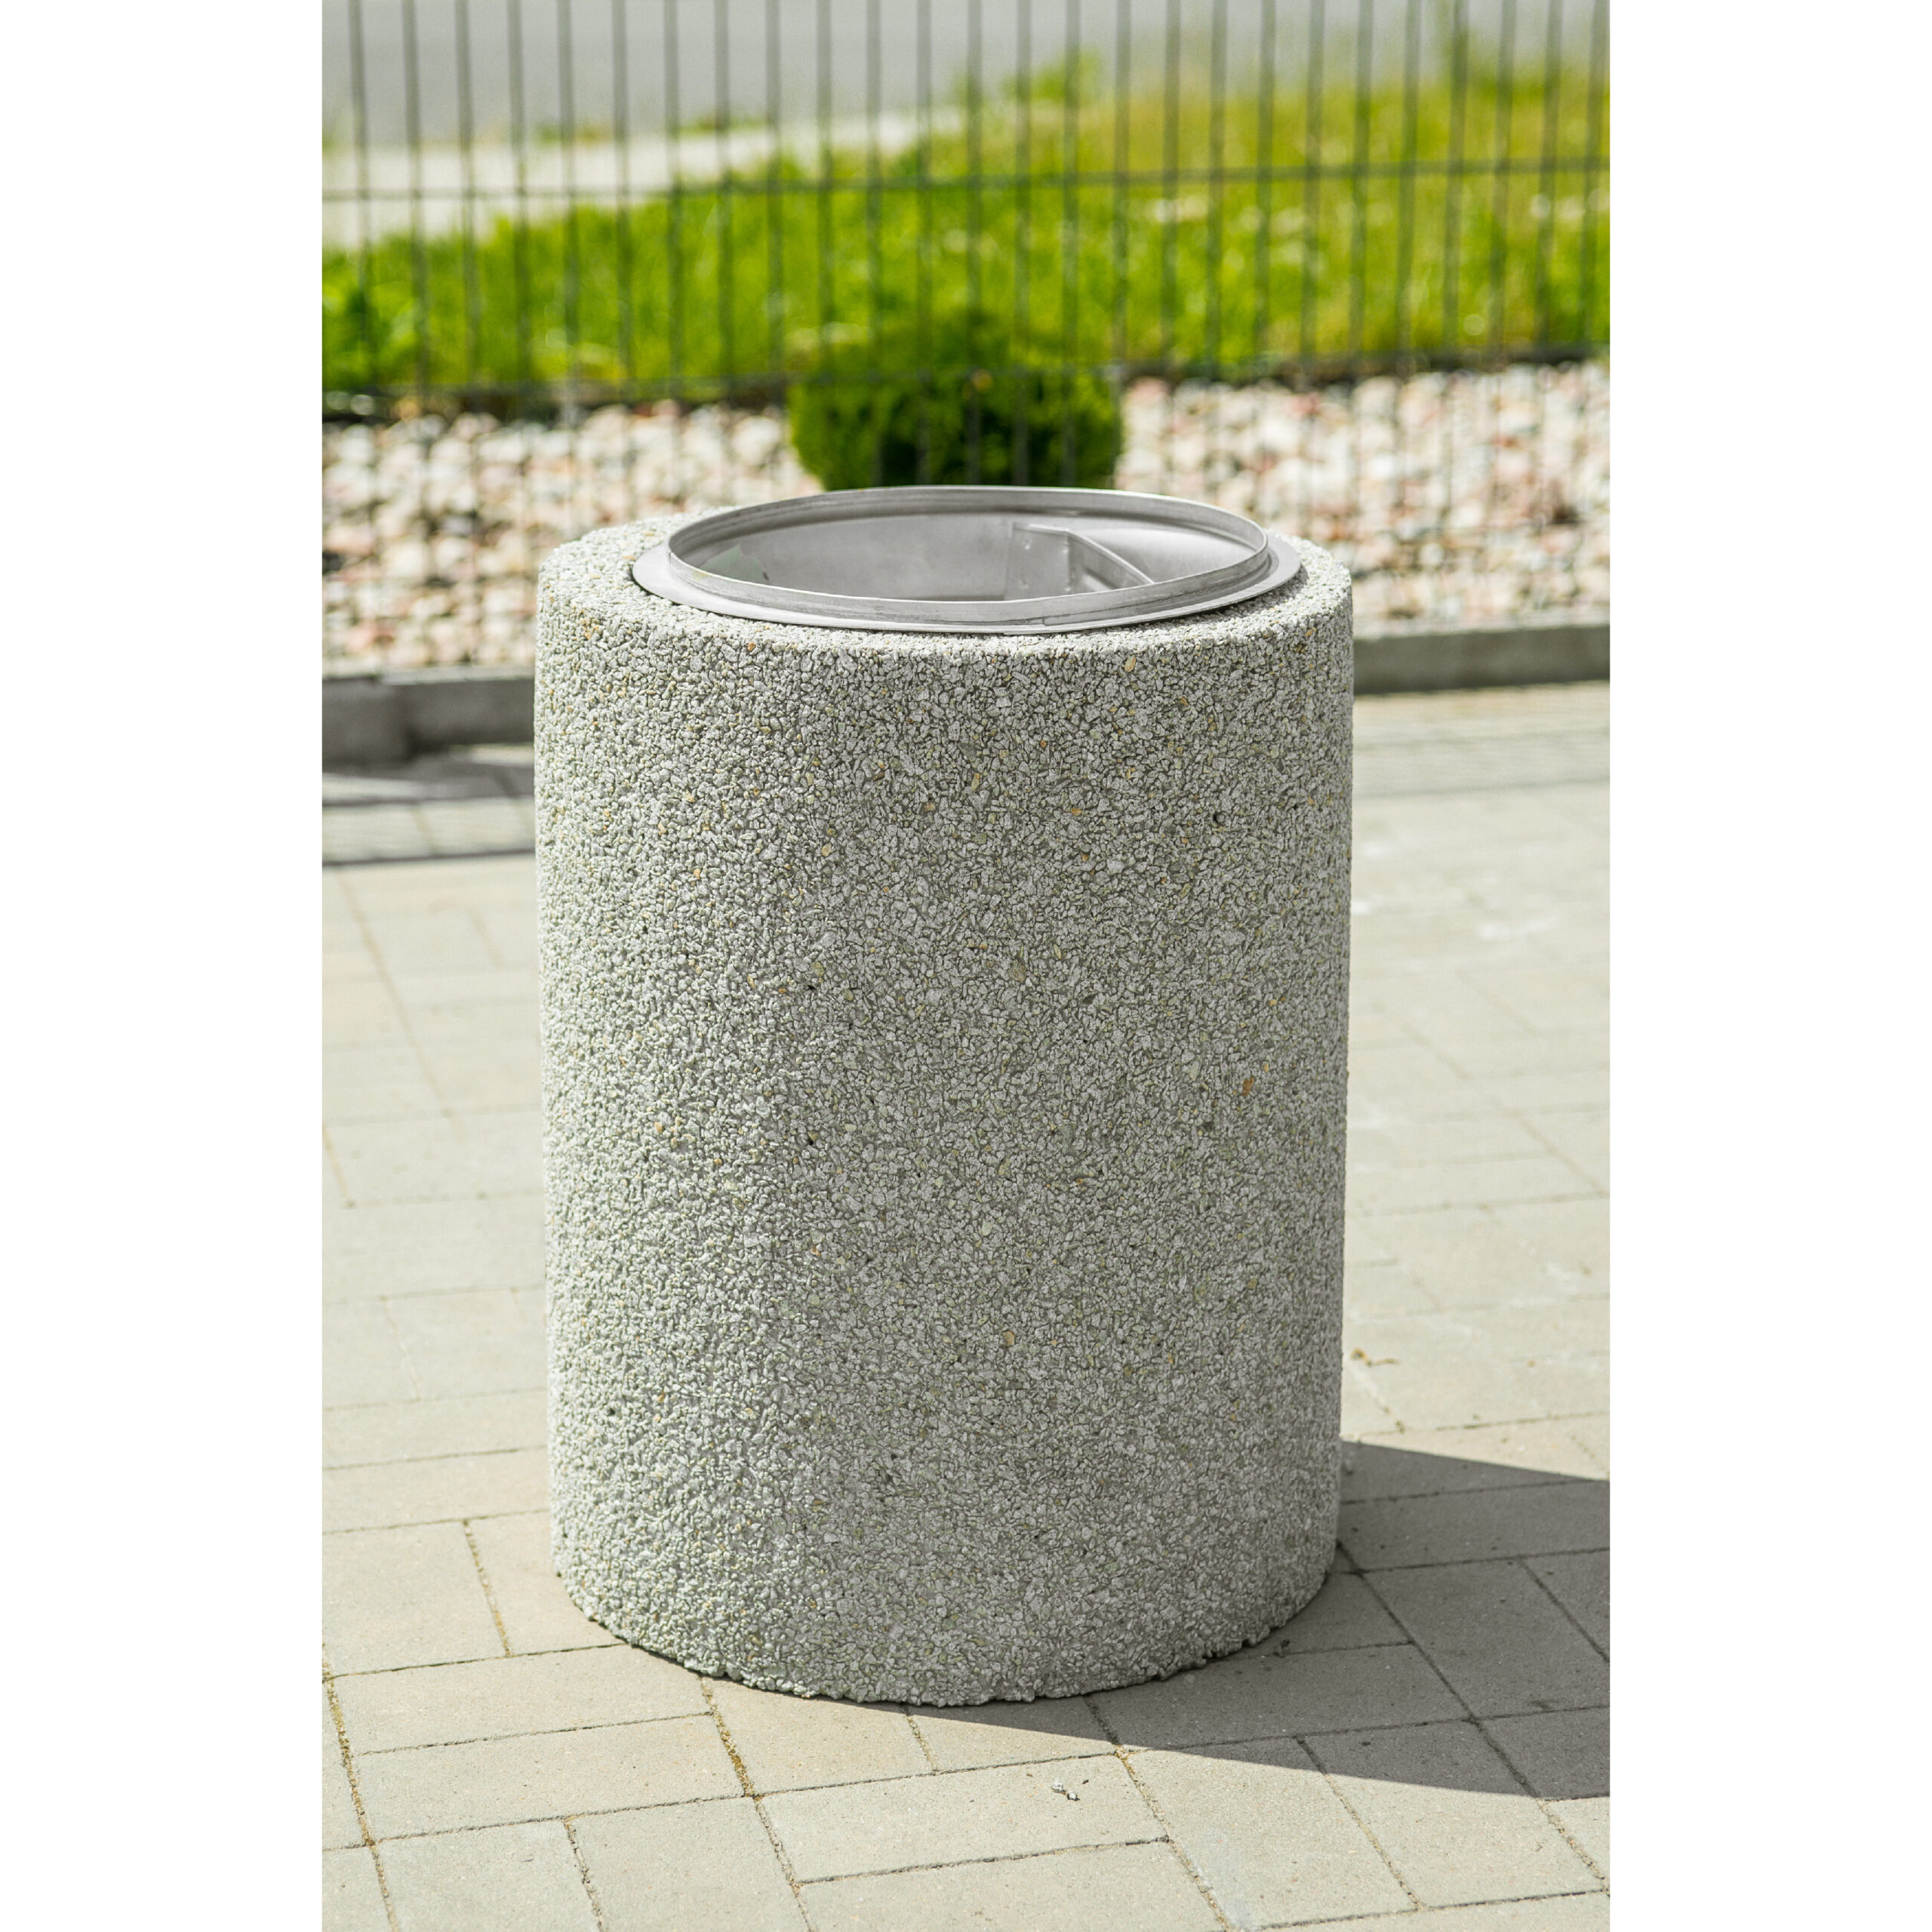 KB-02 concrete bin